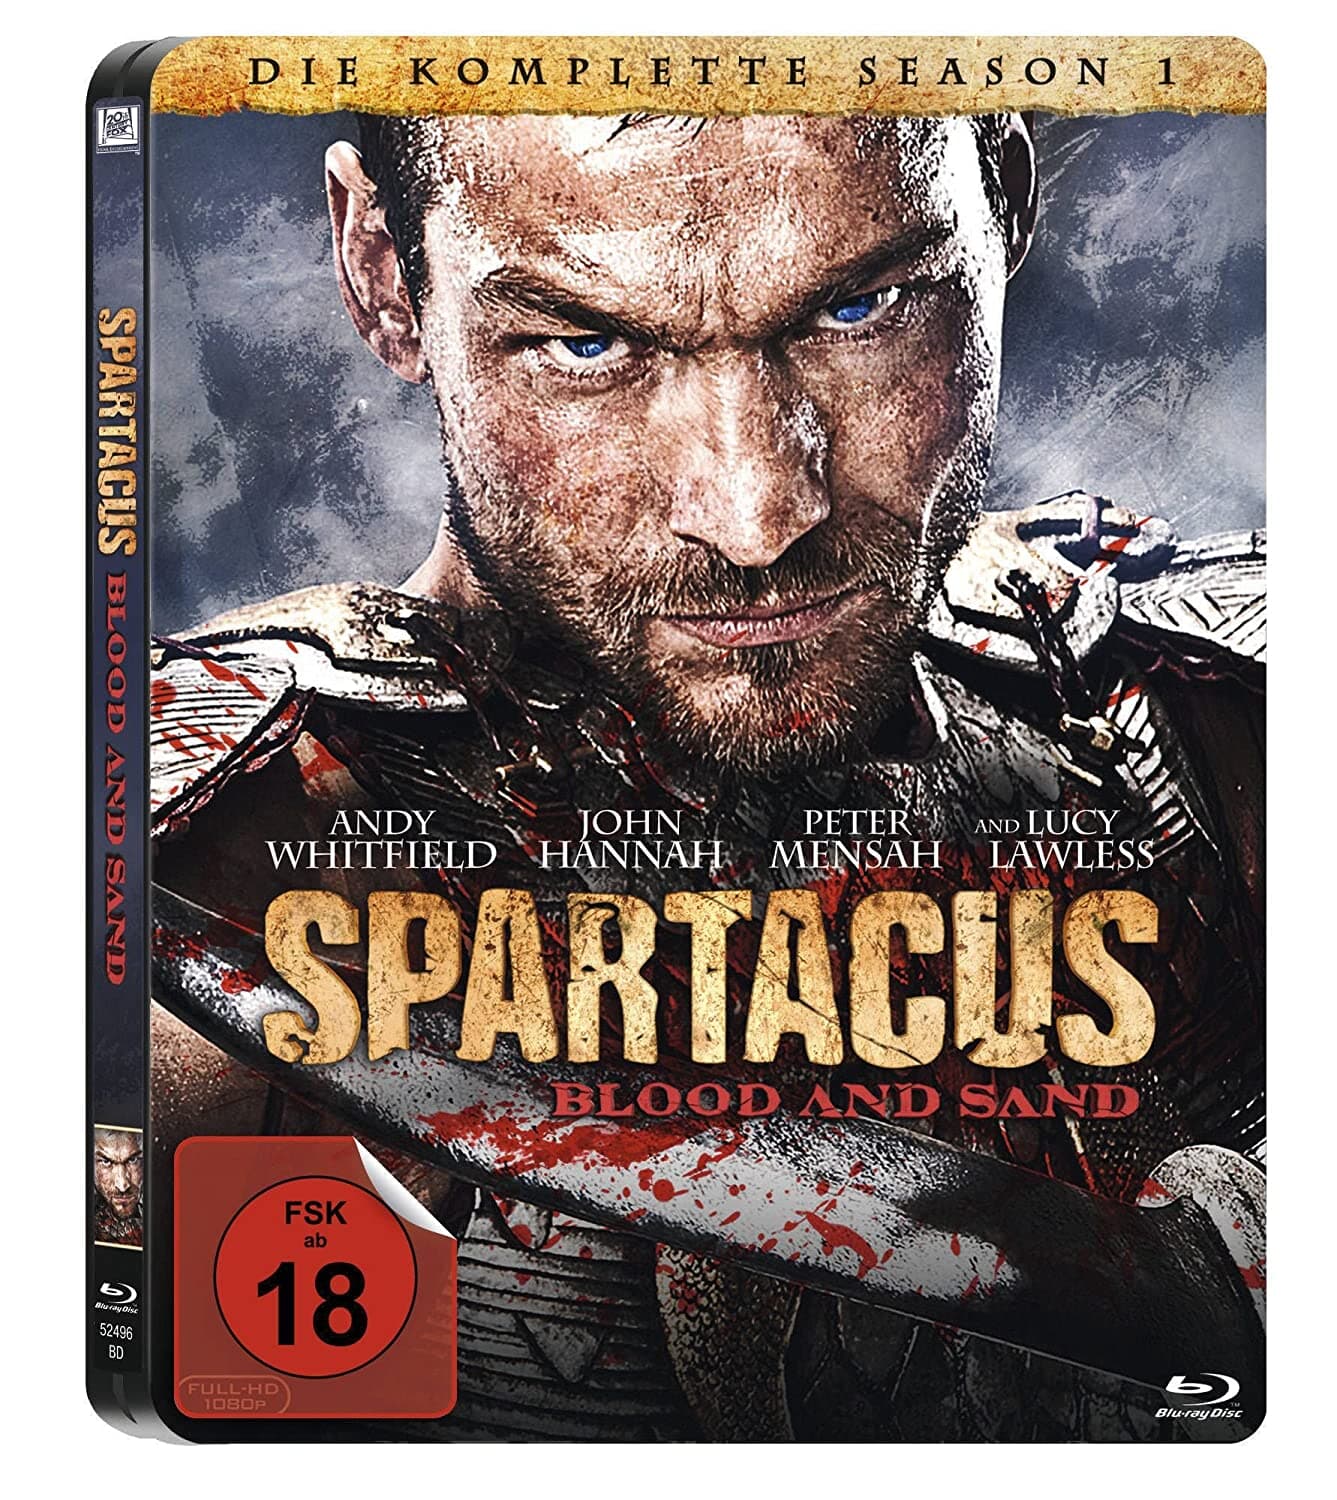 [블루레이] 스파르타쿠스 - 블러드 앤 샌드 스틸북 한정판 4disc (Spartacus: Blood and Sand - Season 1) 